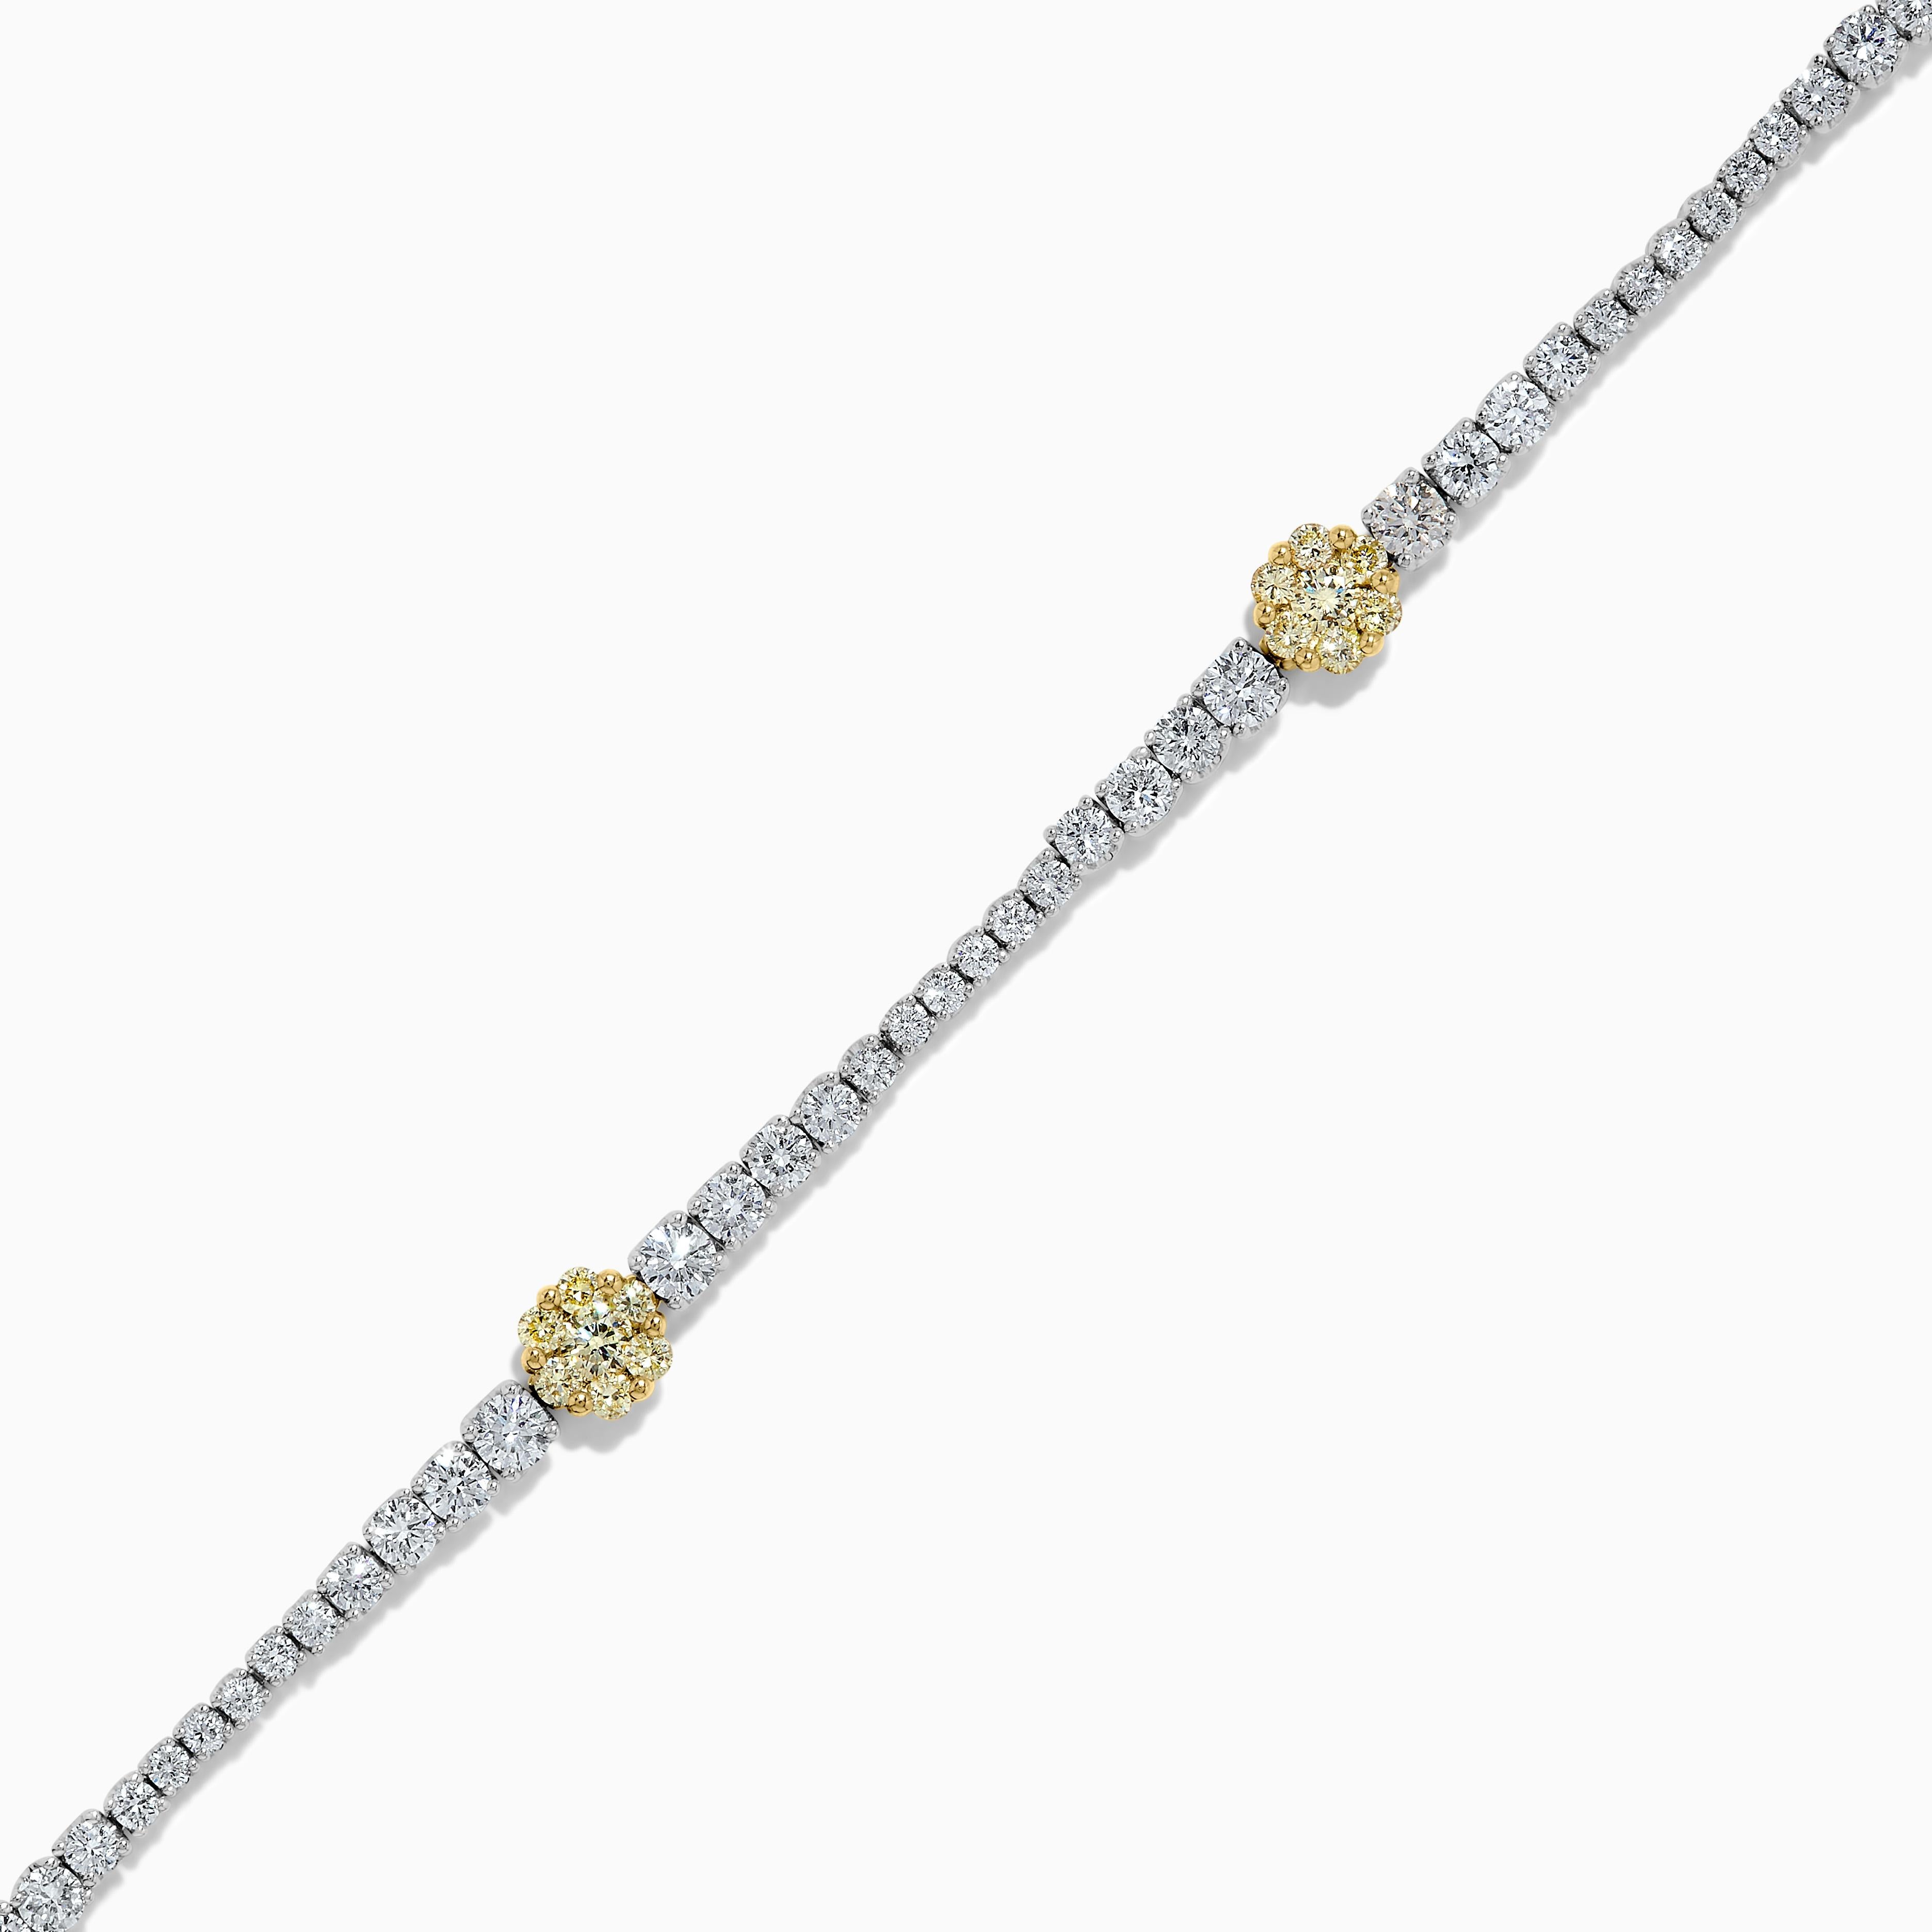 RareGemWorlds klassisches gelbes Diamantarmband mit Rundschliff. Eingefasst in eine wunderschöne Fassung aus 18 Karat Gelb- und Weißgold mit Clustern aus natürlichen gelben Diamanten im Rundschliff. Die gelben Diamanten sind von kleinen runden